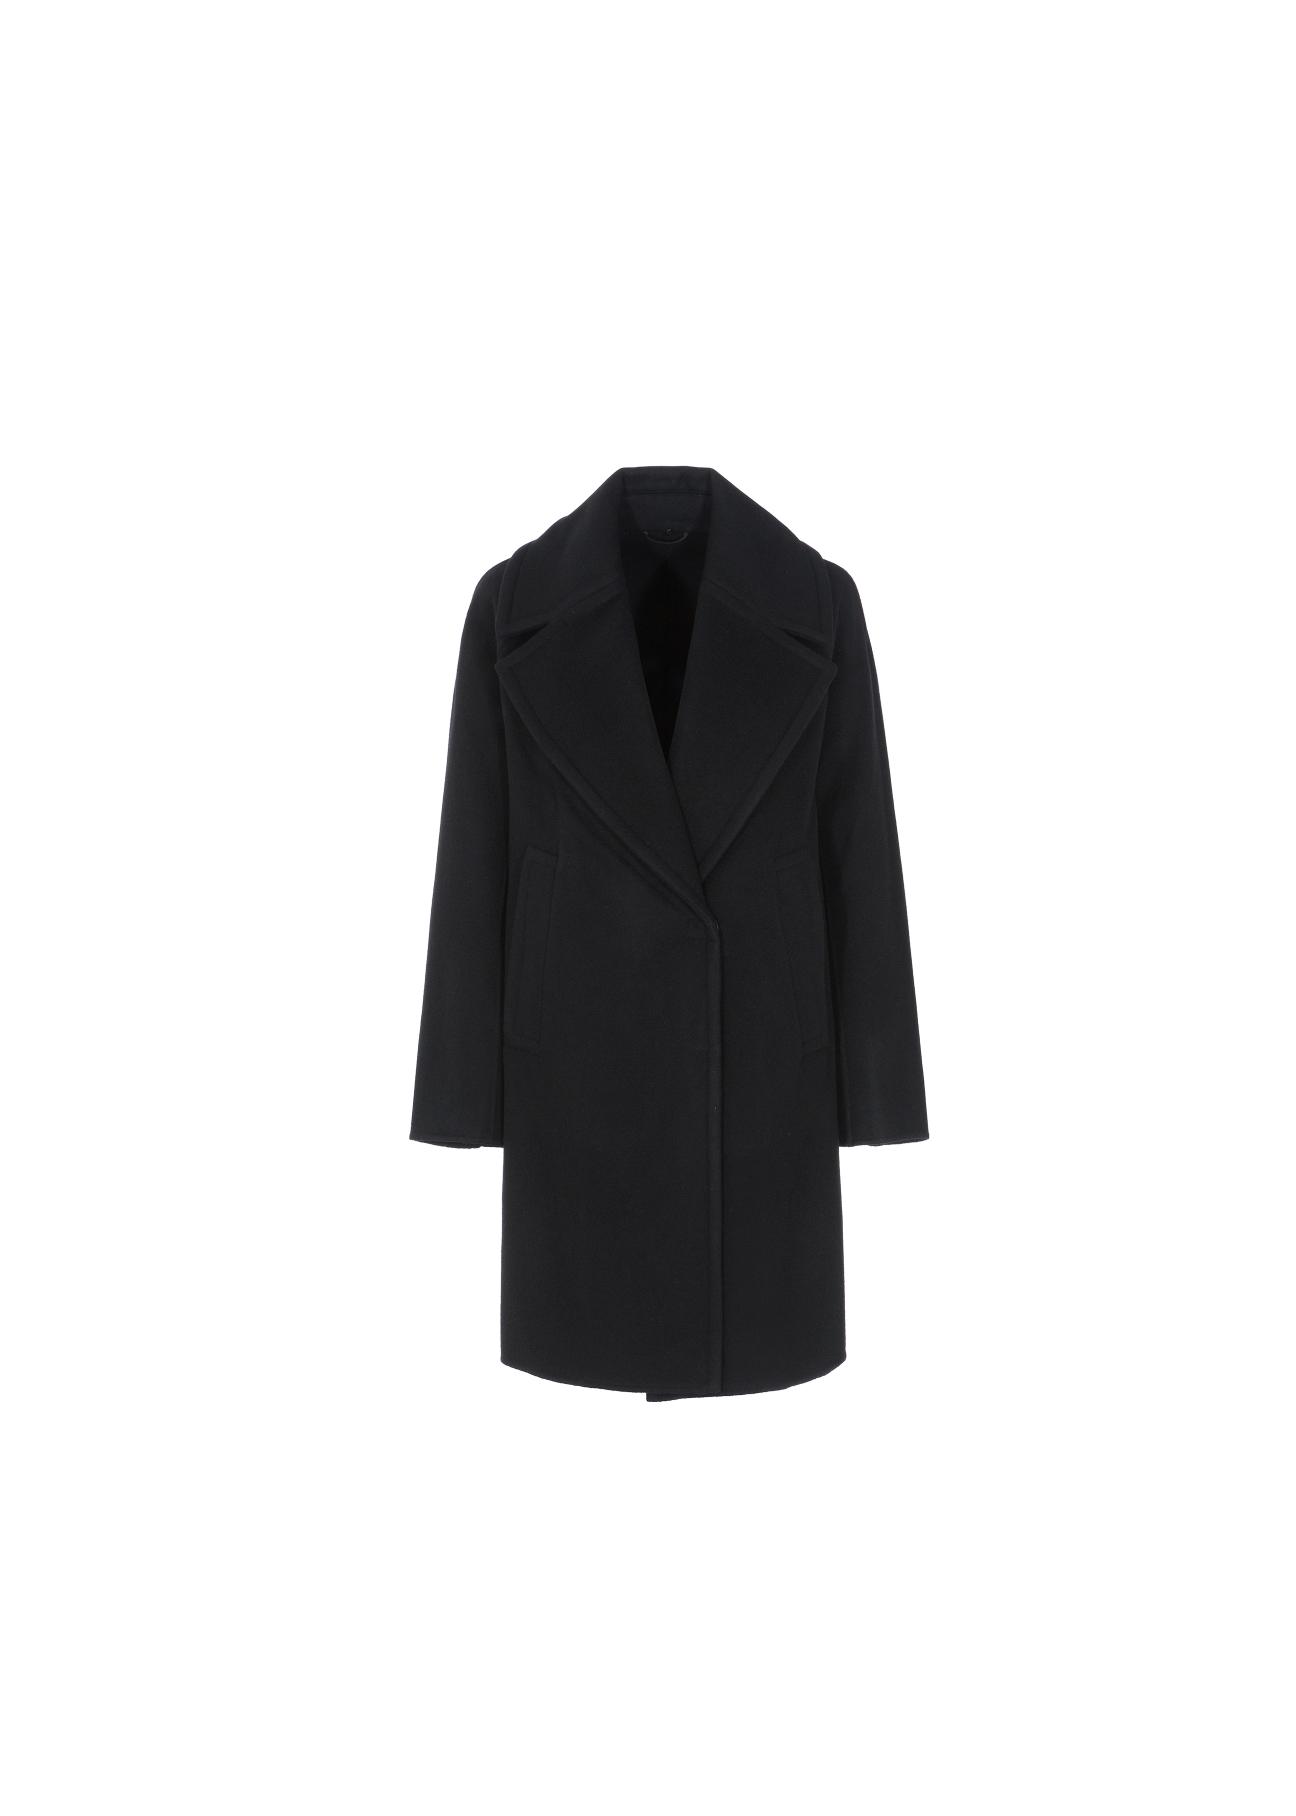 Wełniany czarny płaszcz damski PLADT-0036-99(Z20)